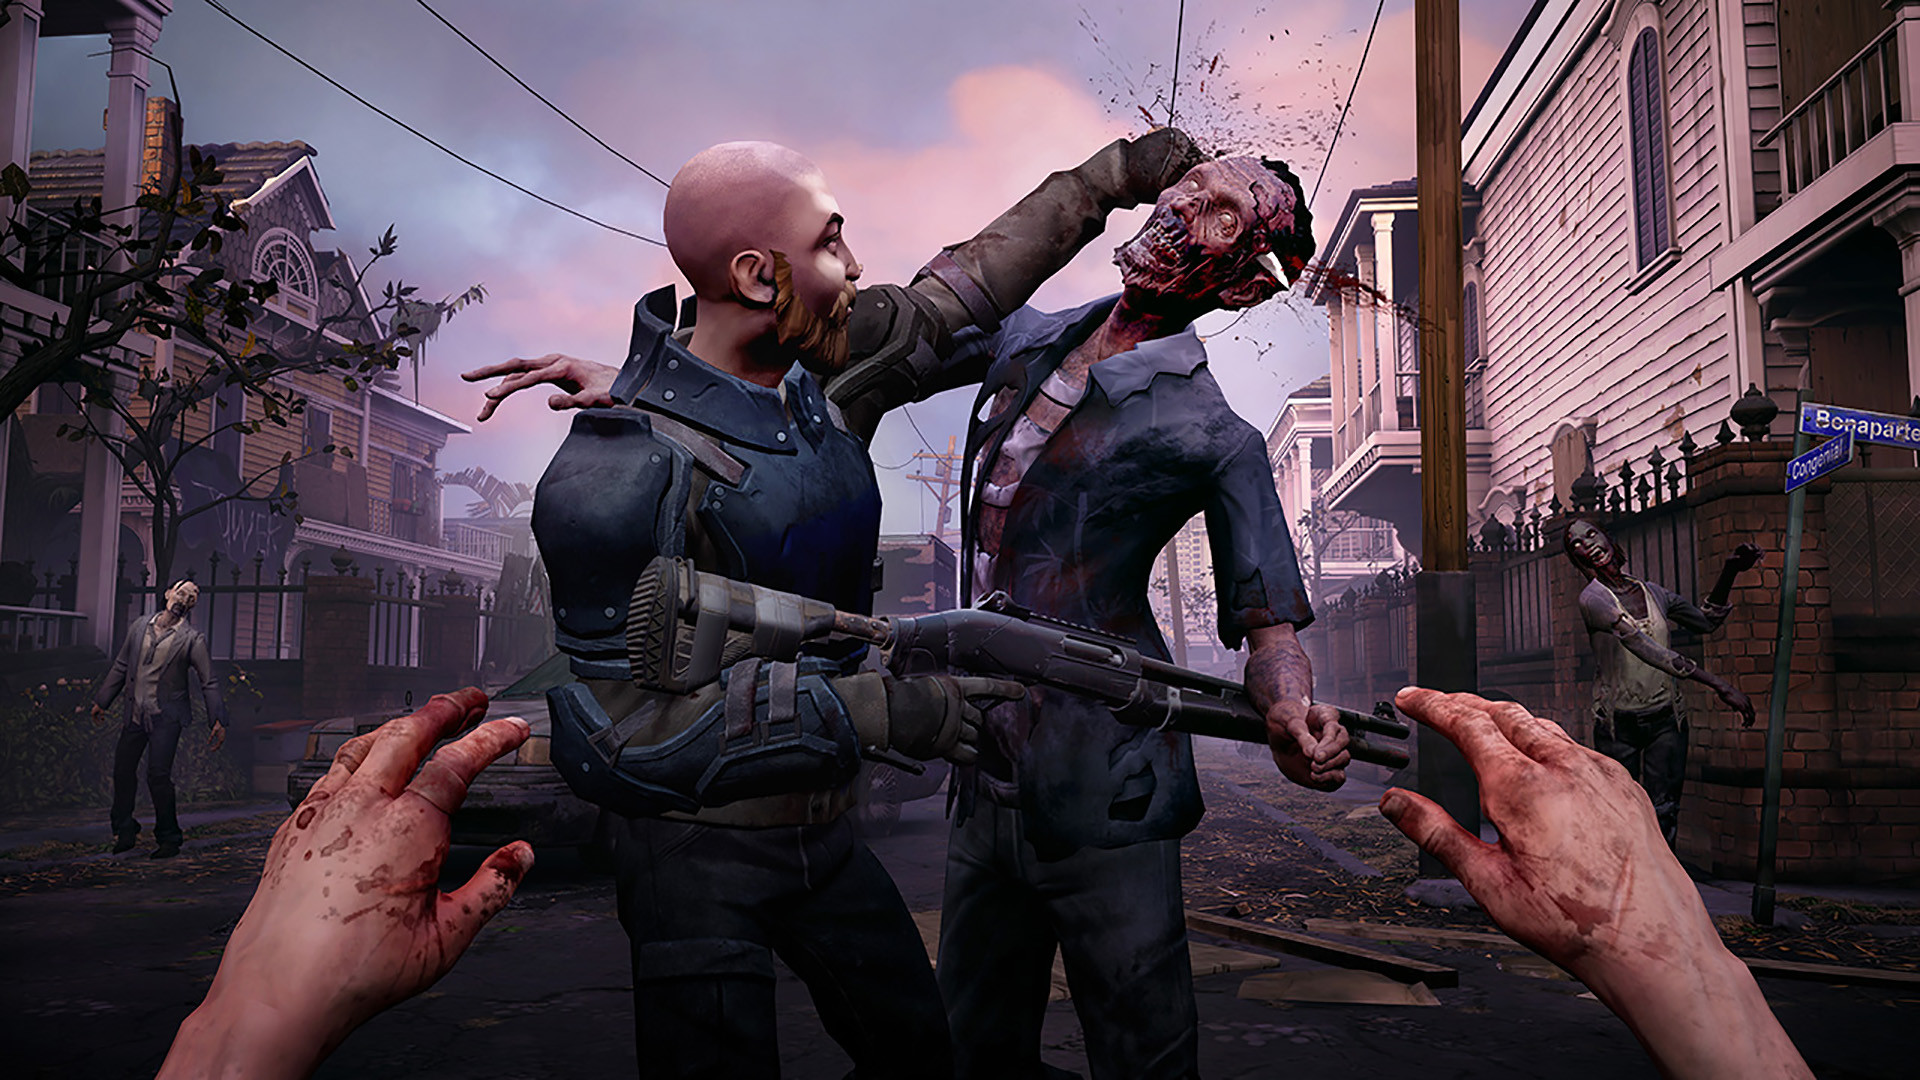 The Walking Dead: Saints & Sinners on Steam